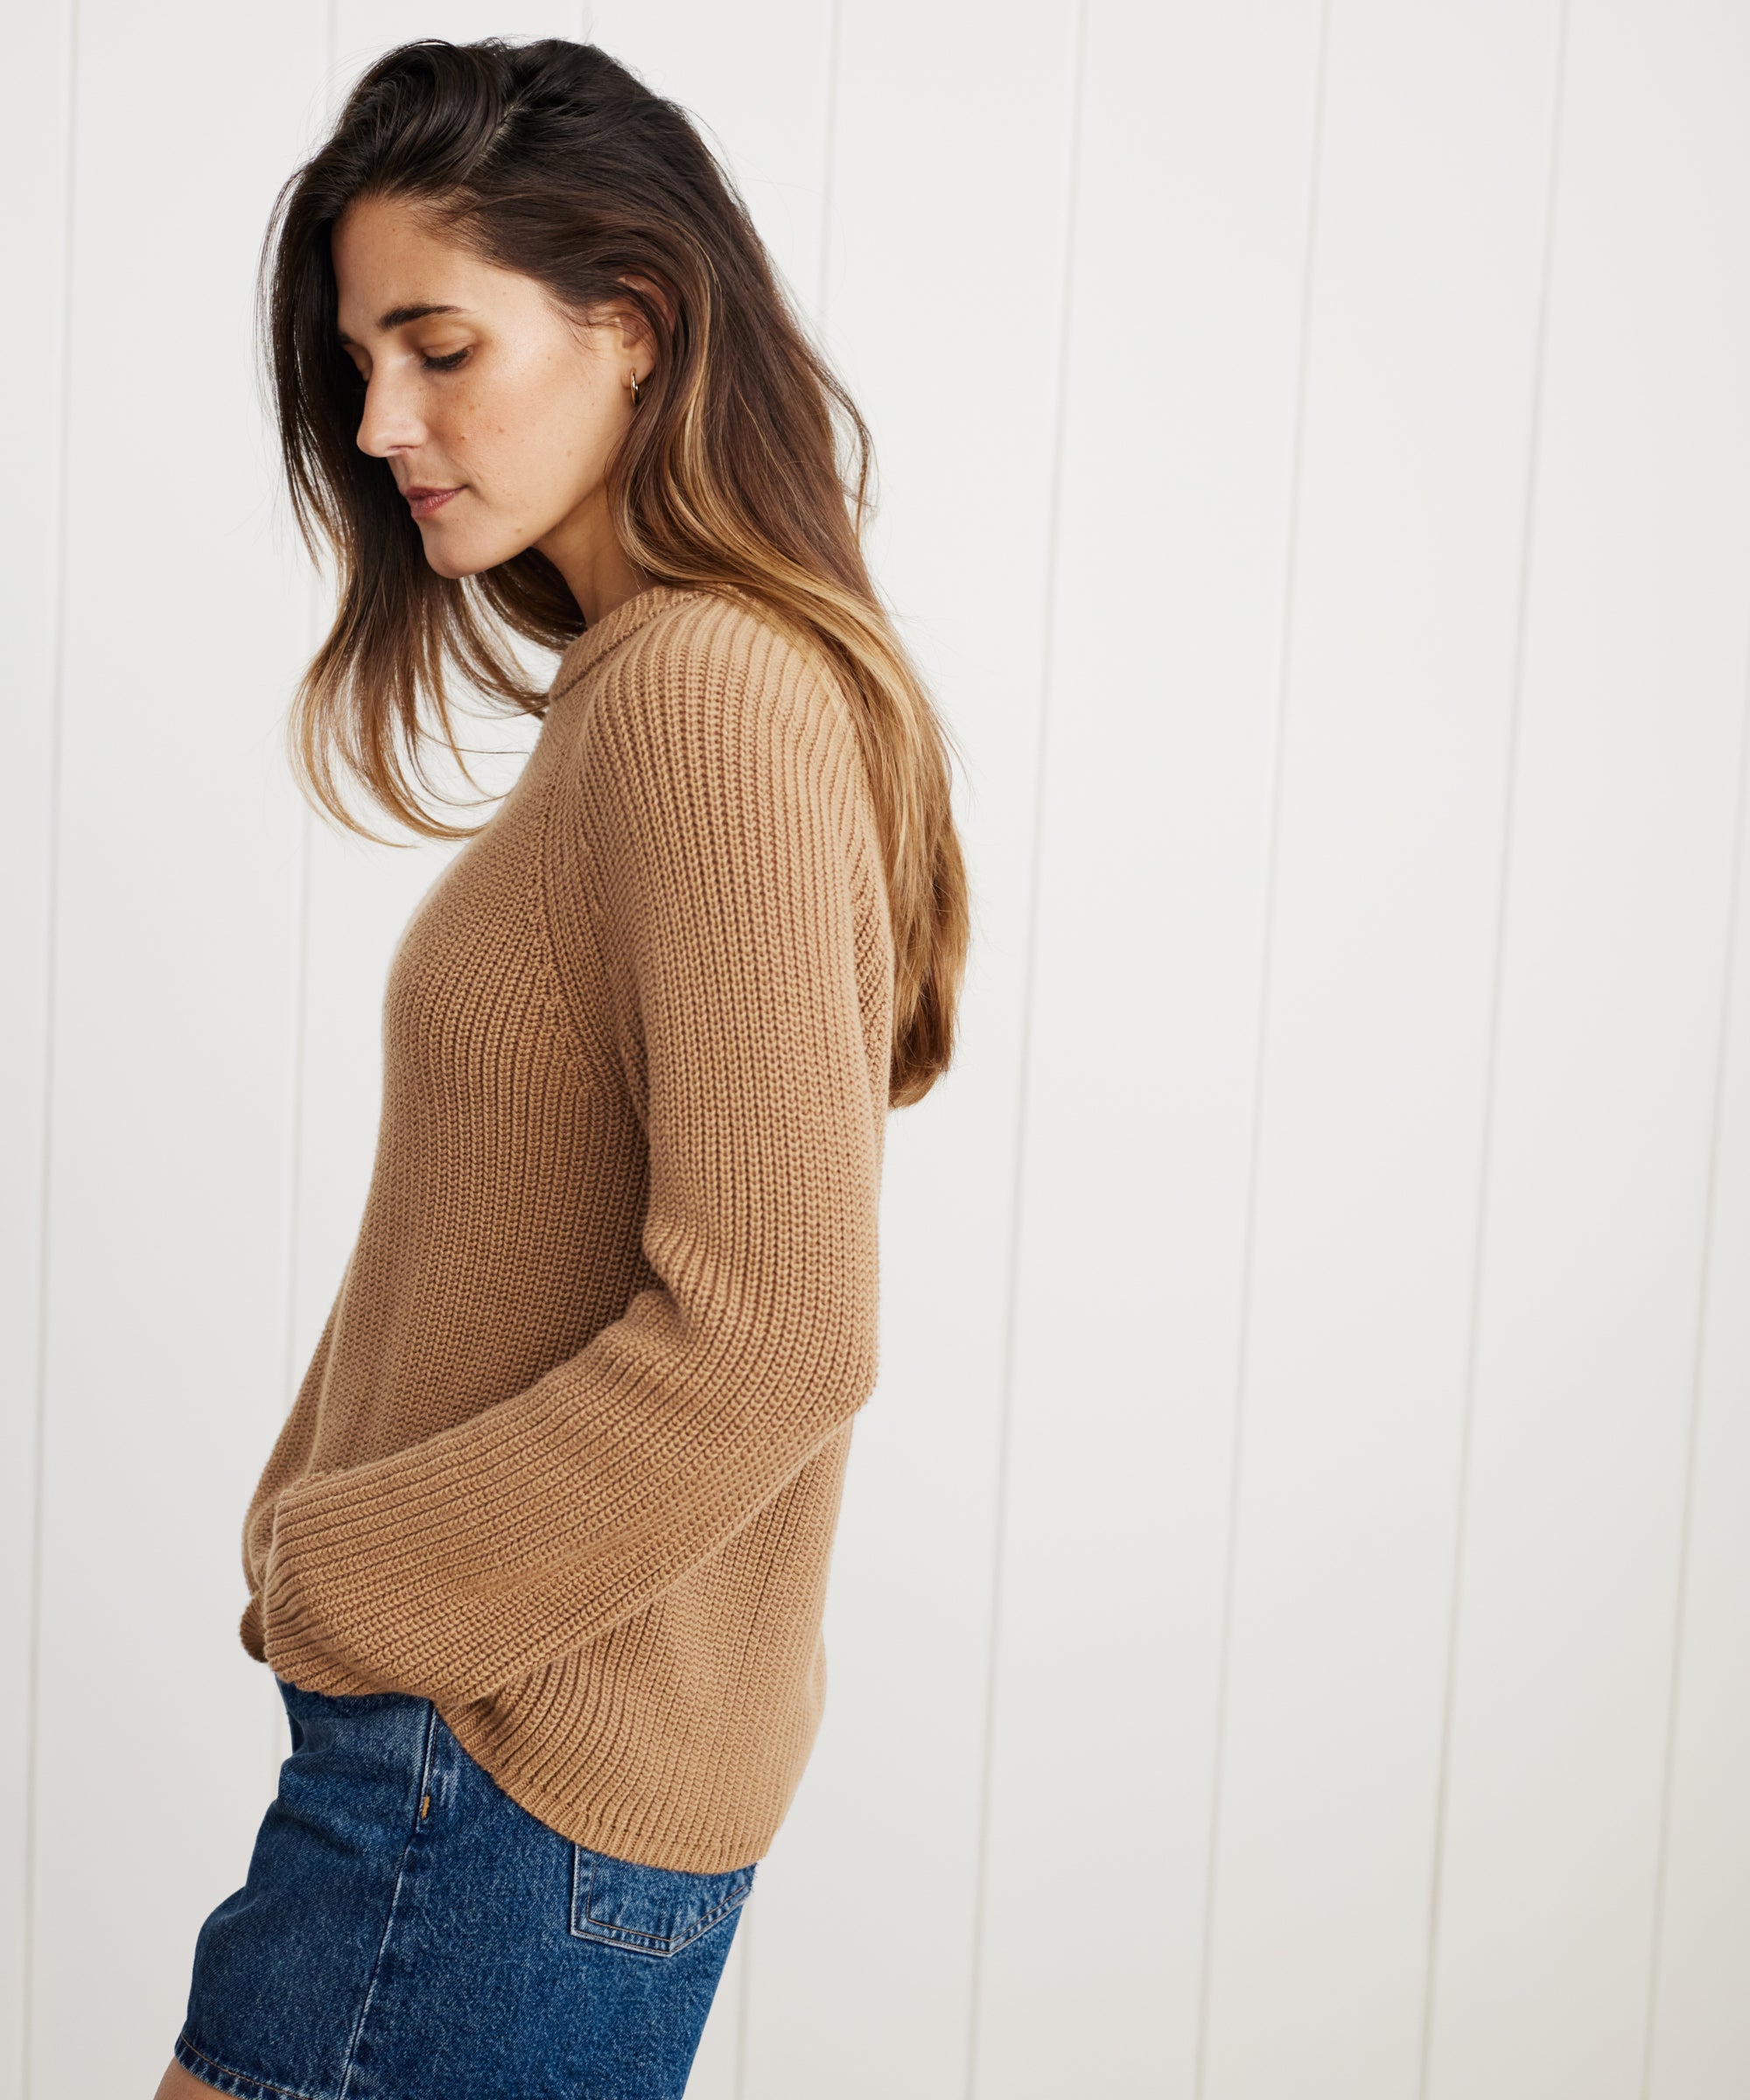 Jenni Kayne Women's Cotton Fisherman Sweater Size X-Large